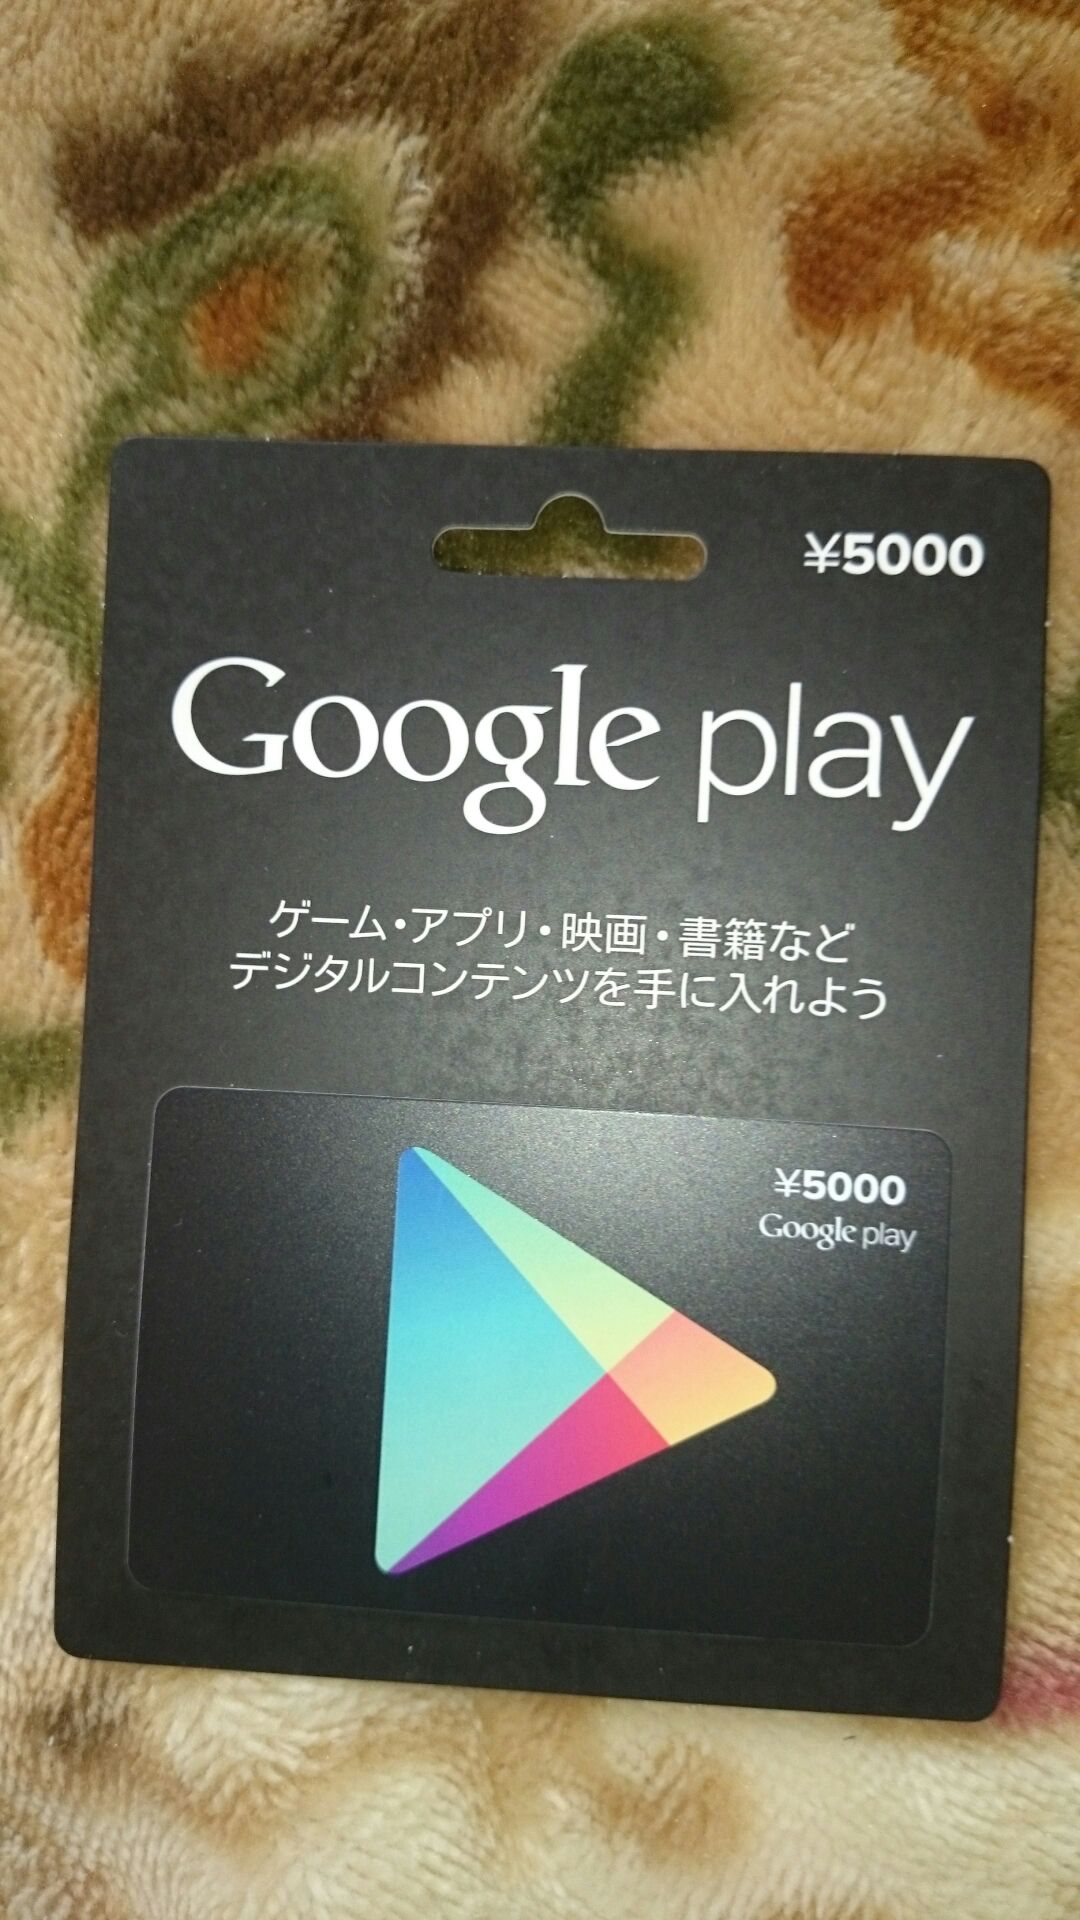 Google Play ギフトカードを購入してみた